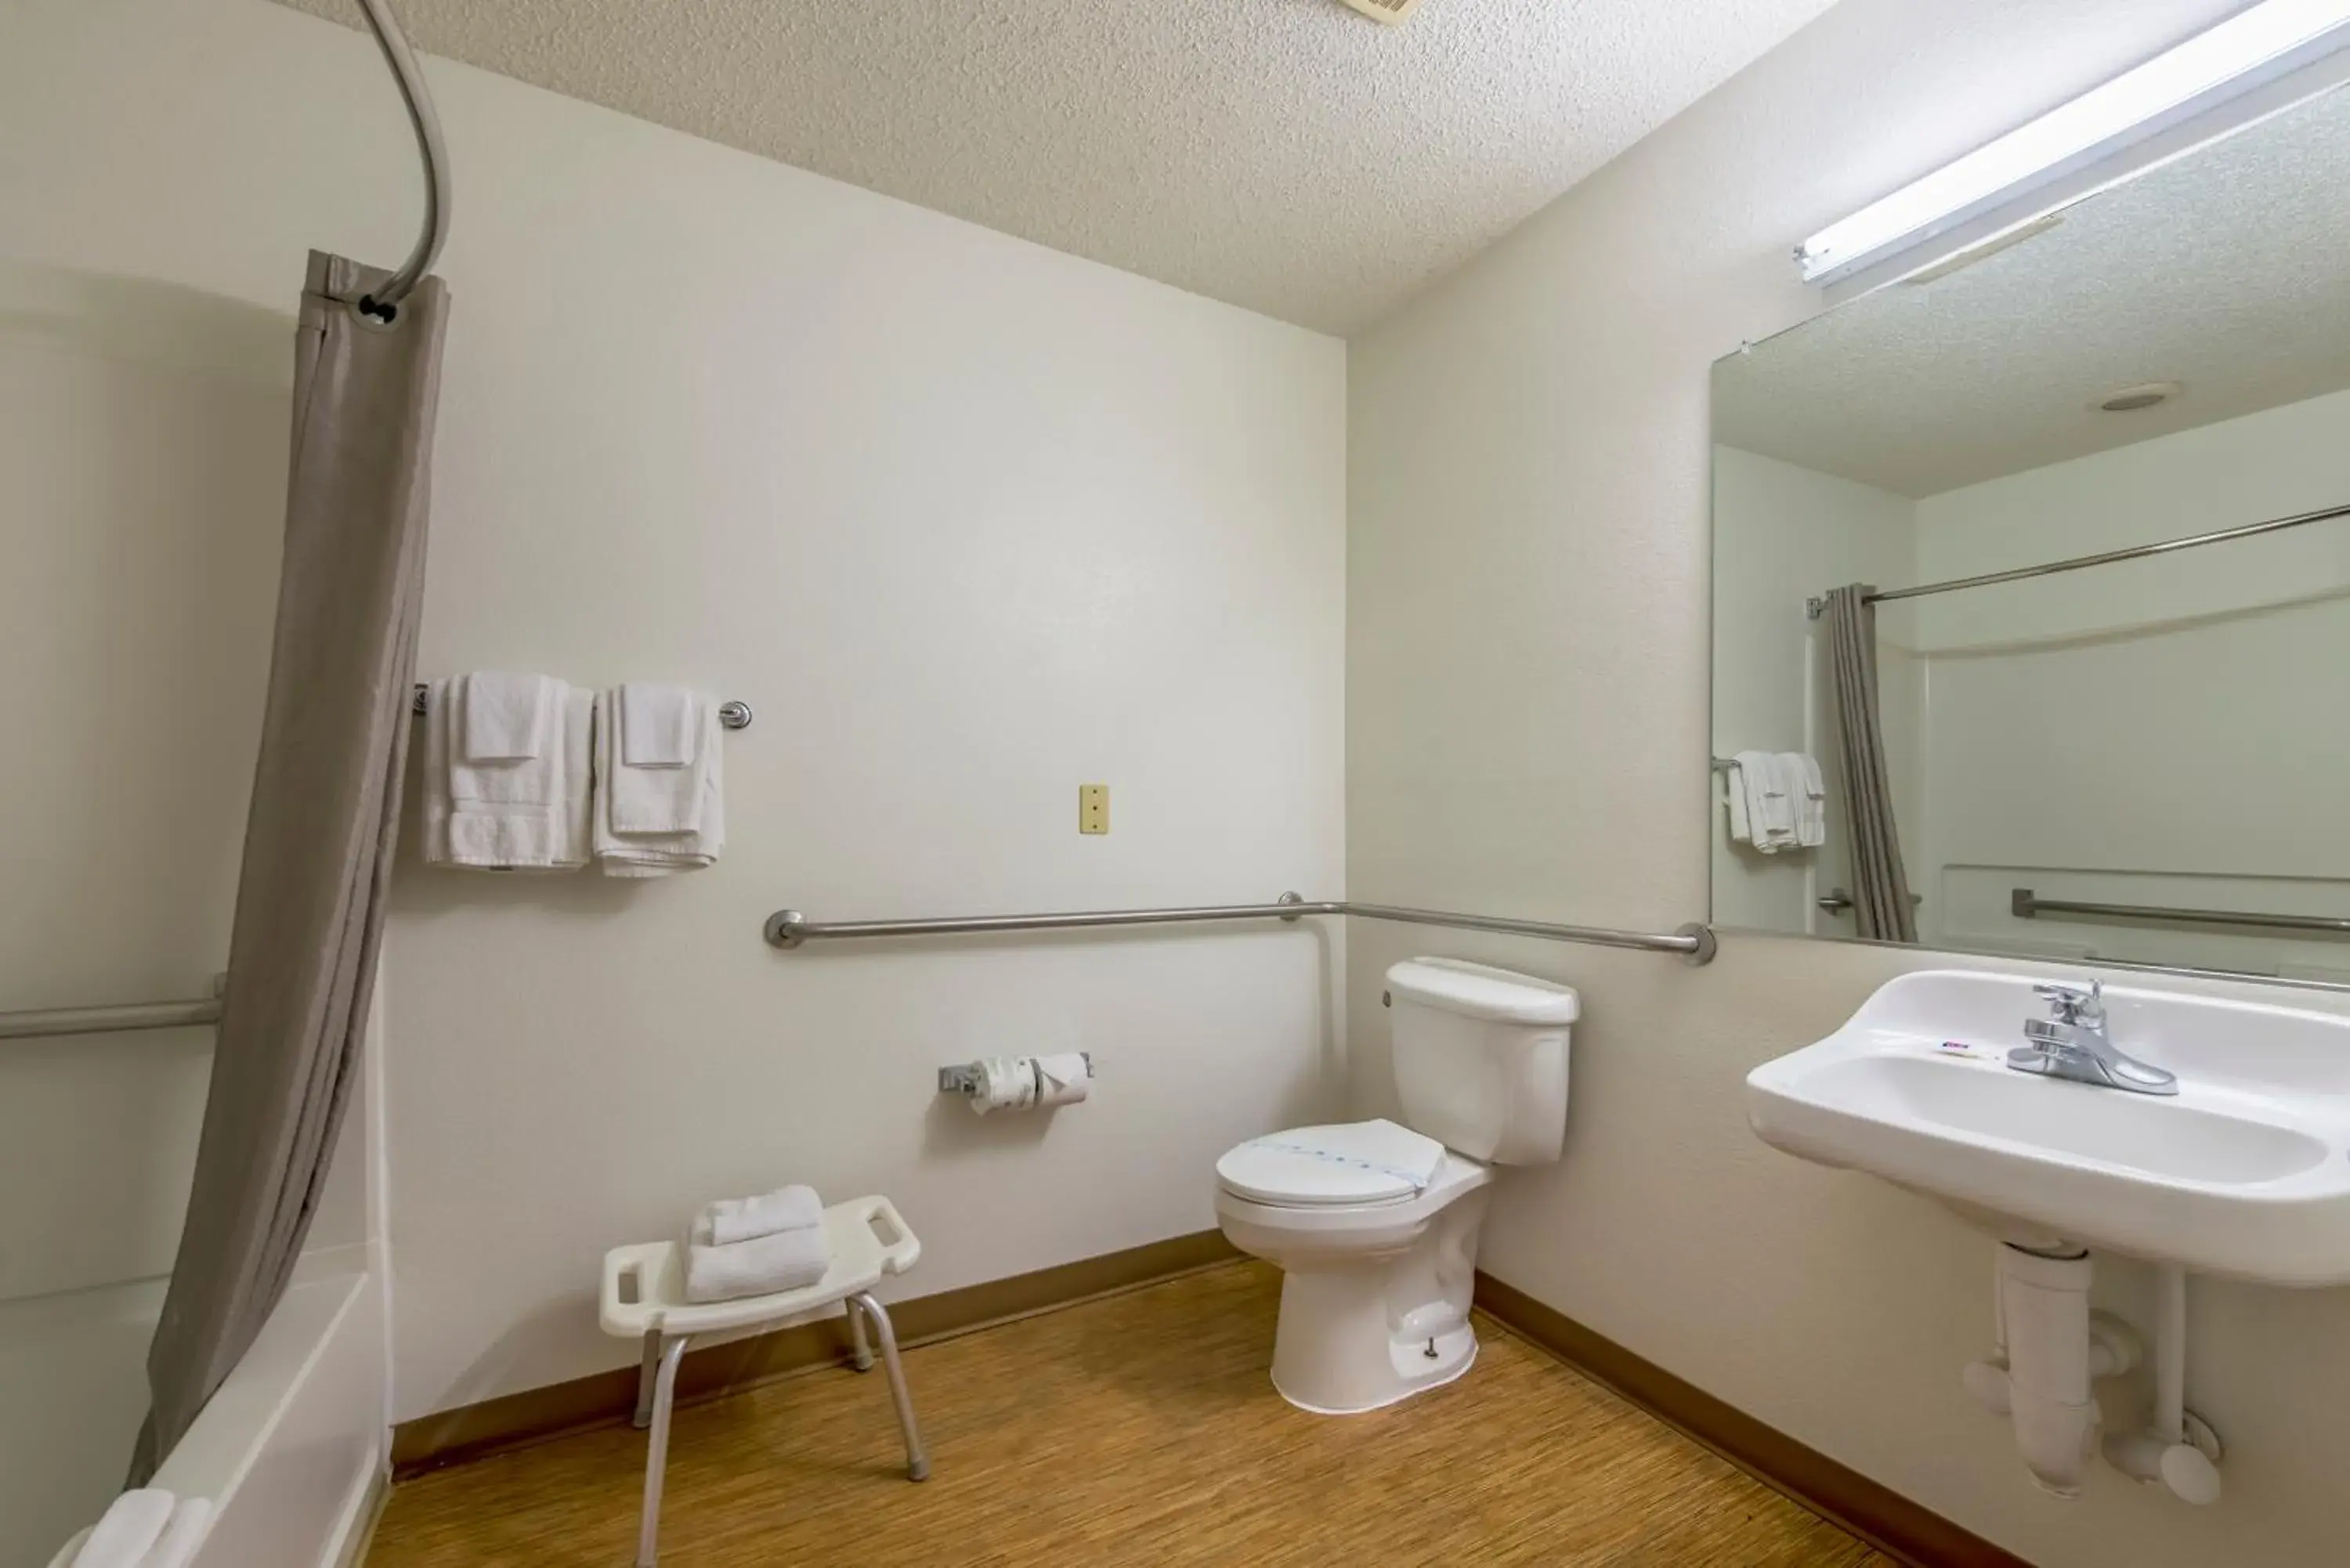 Bathroom in Motel 6 Indianapolis, IN